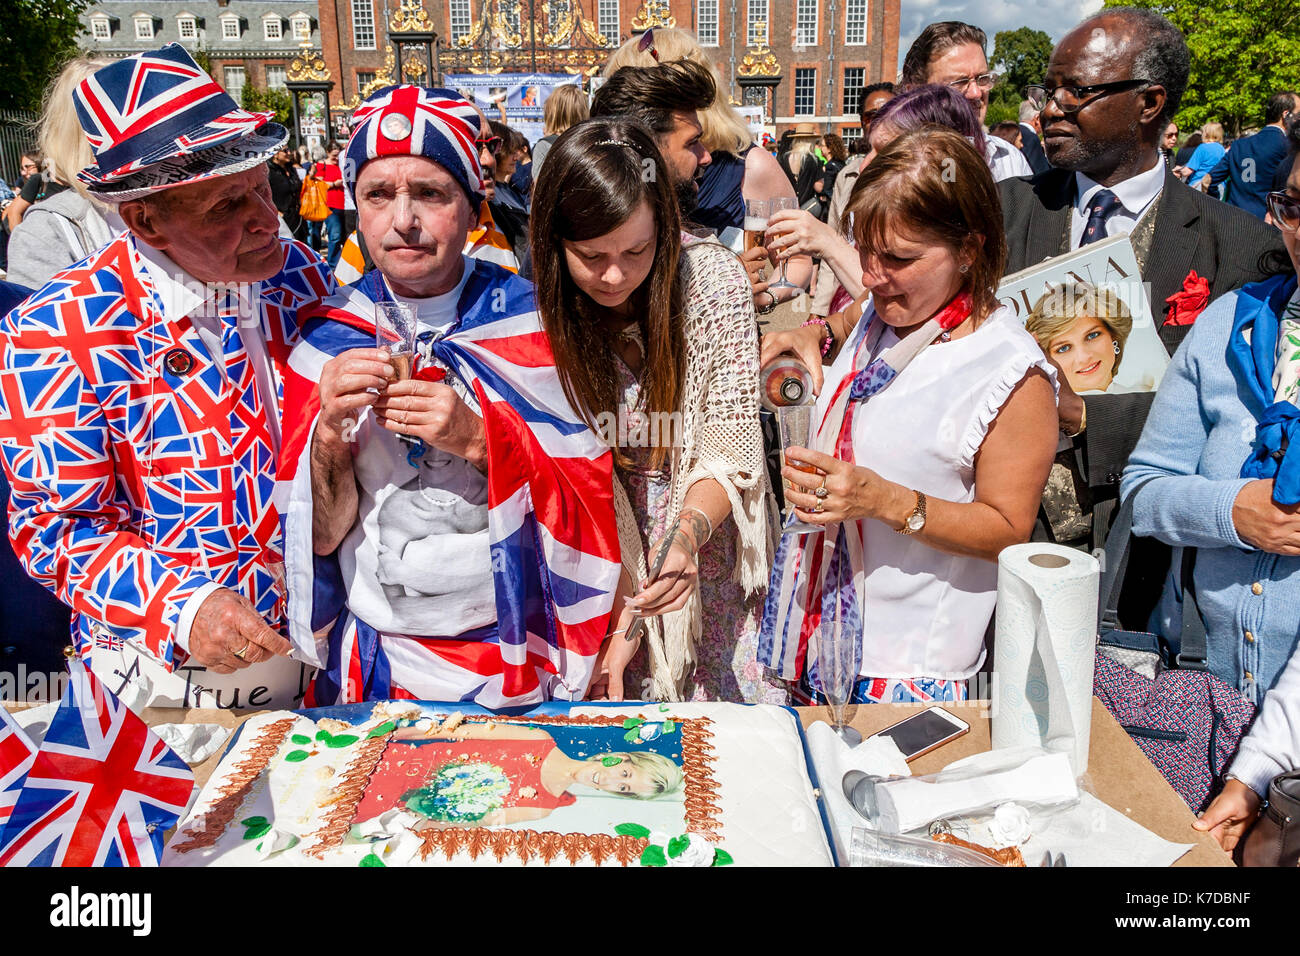 Les partisans de la défunte princesse Diana de boire du champagne en mémoire de son sur le 20e anniversaire de sa mort, Kensington Palace, London, UK Banque D'Images